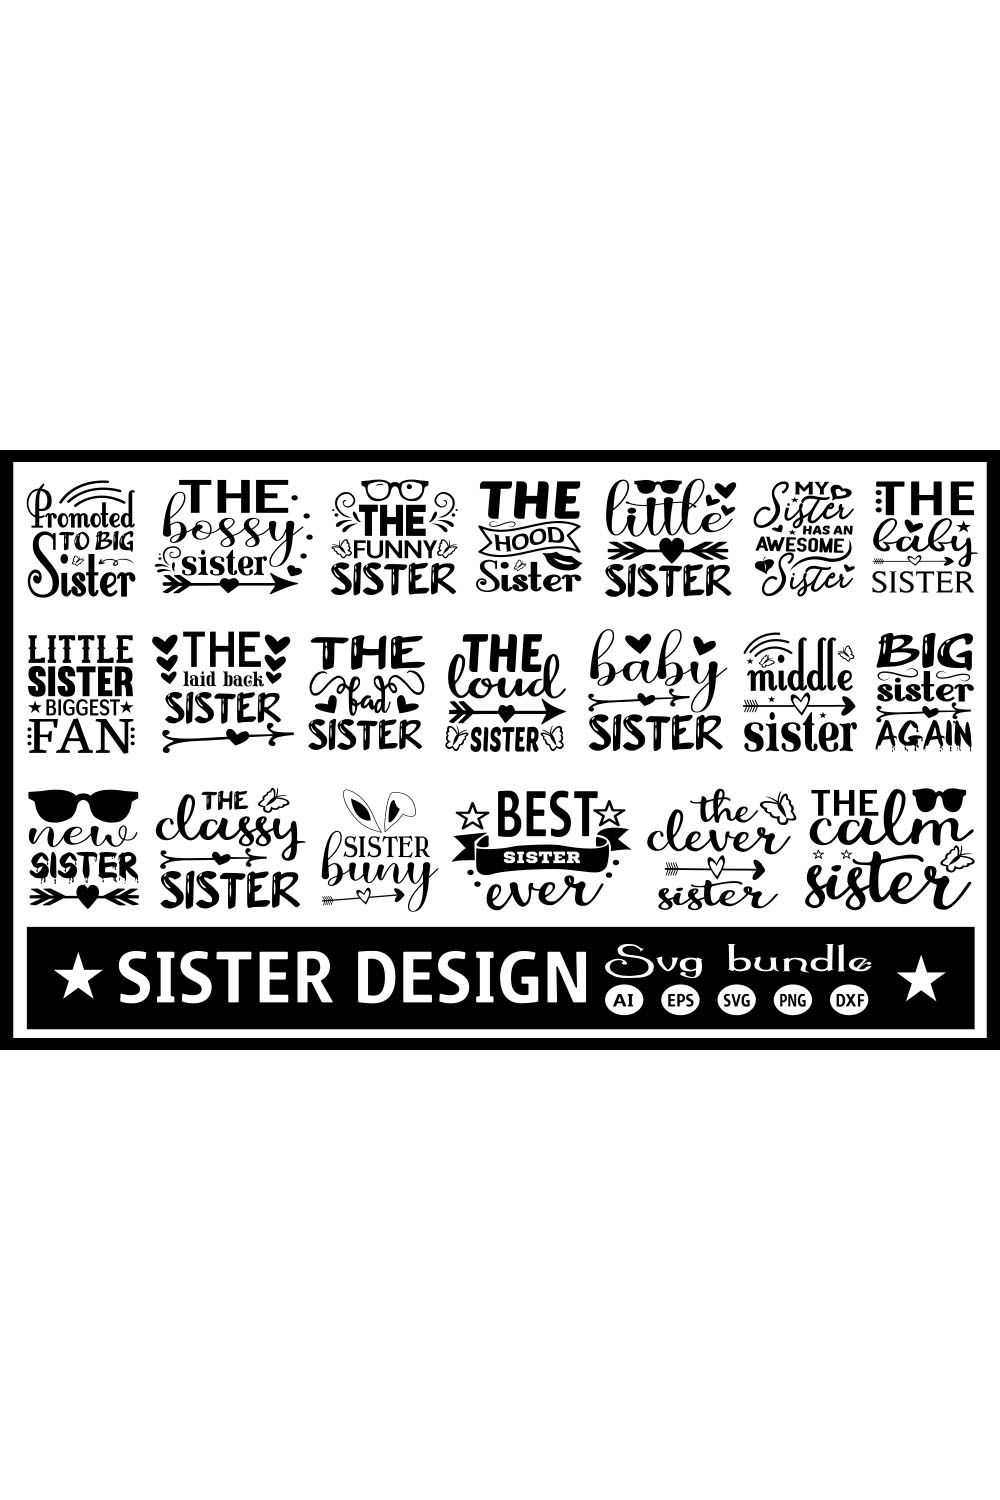 Sister SVG Design Bundle pinterest image.